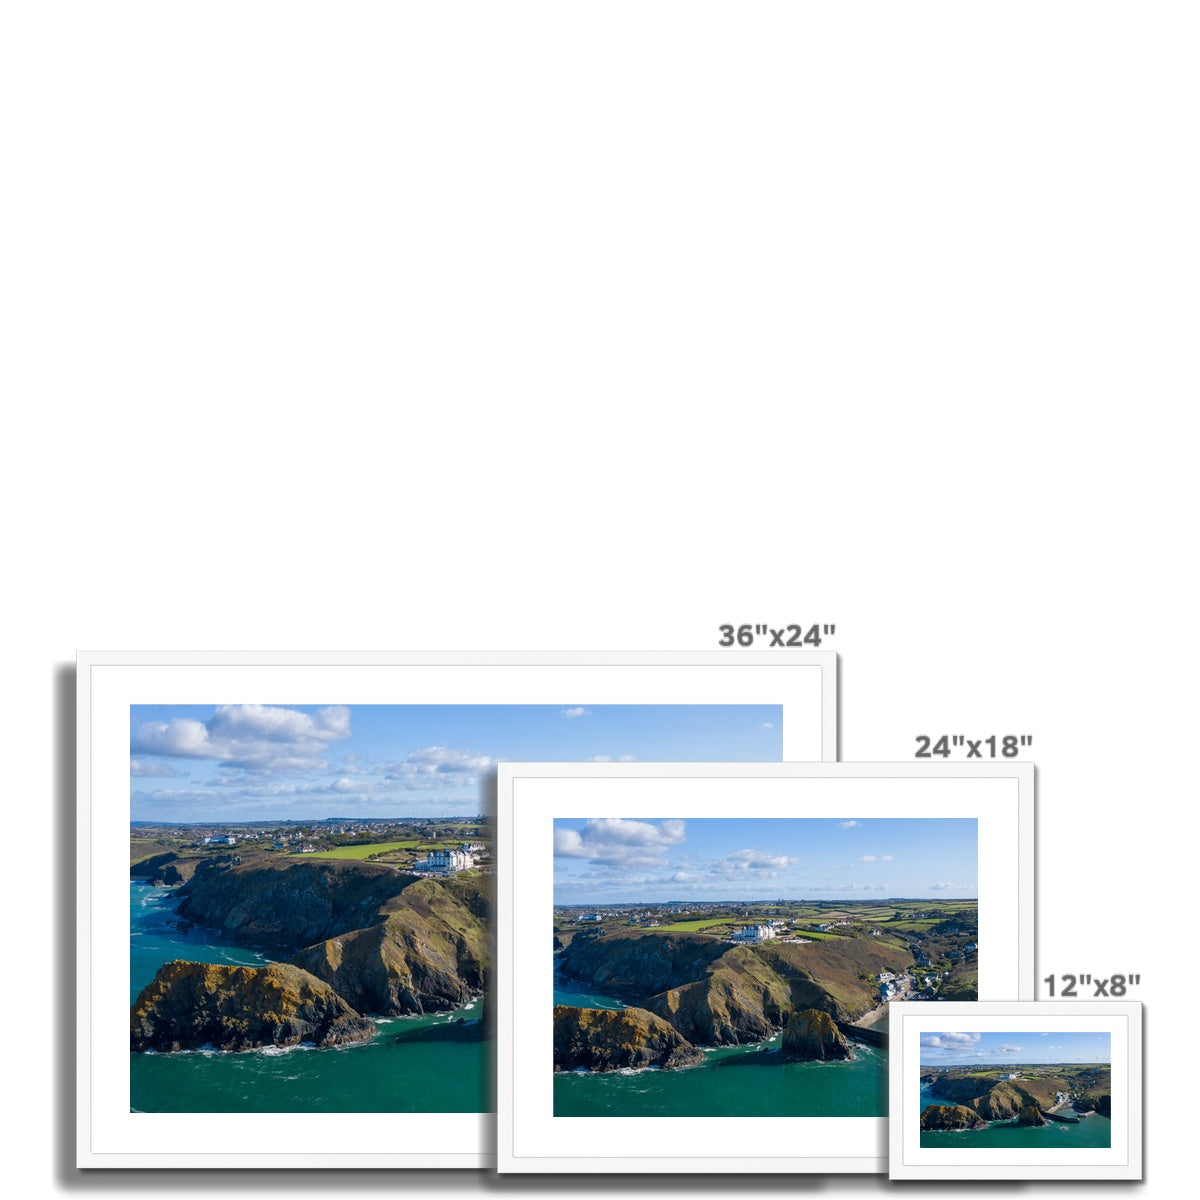 mullion cove landscape frame sizes